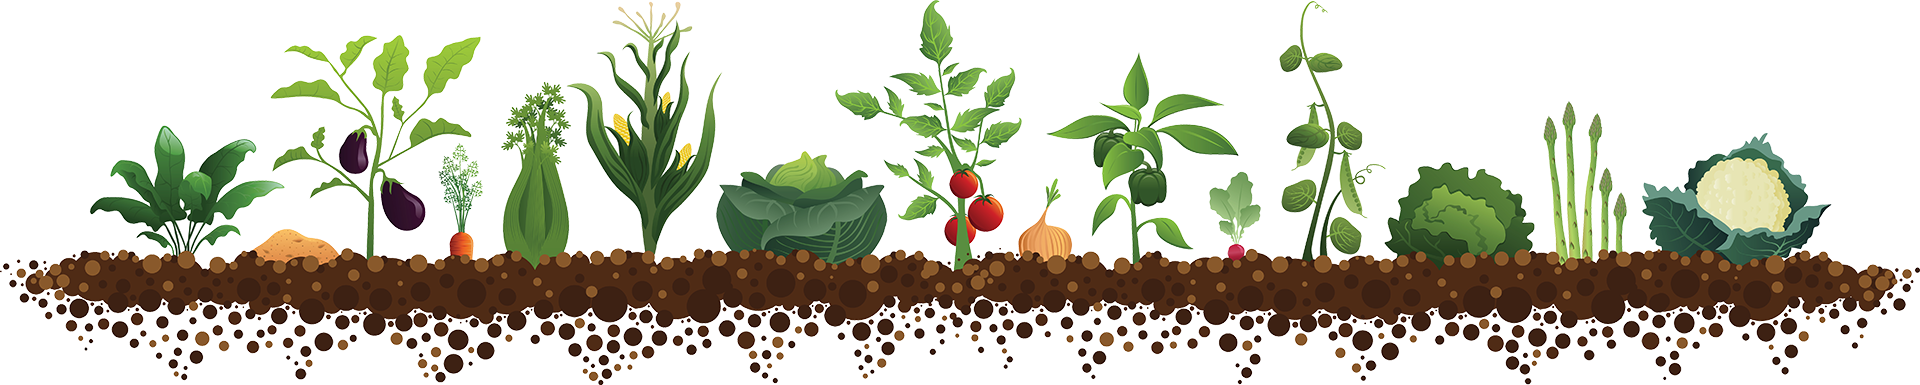 Когда сажать томаты 2020, сеять семена на рассаду, сроки посадок